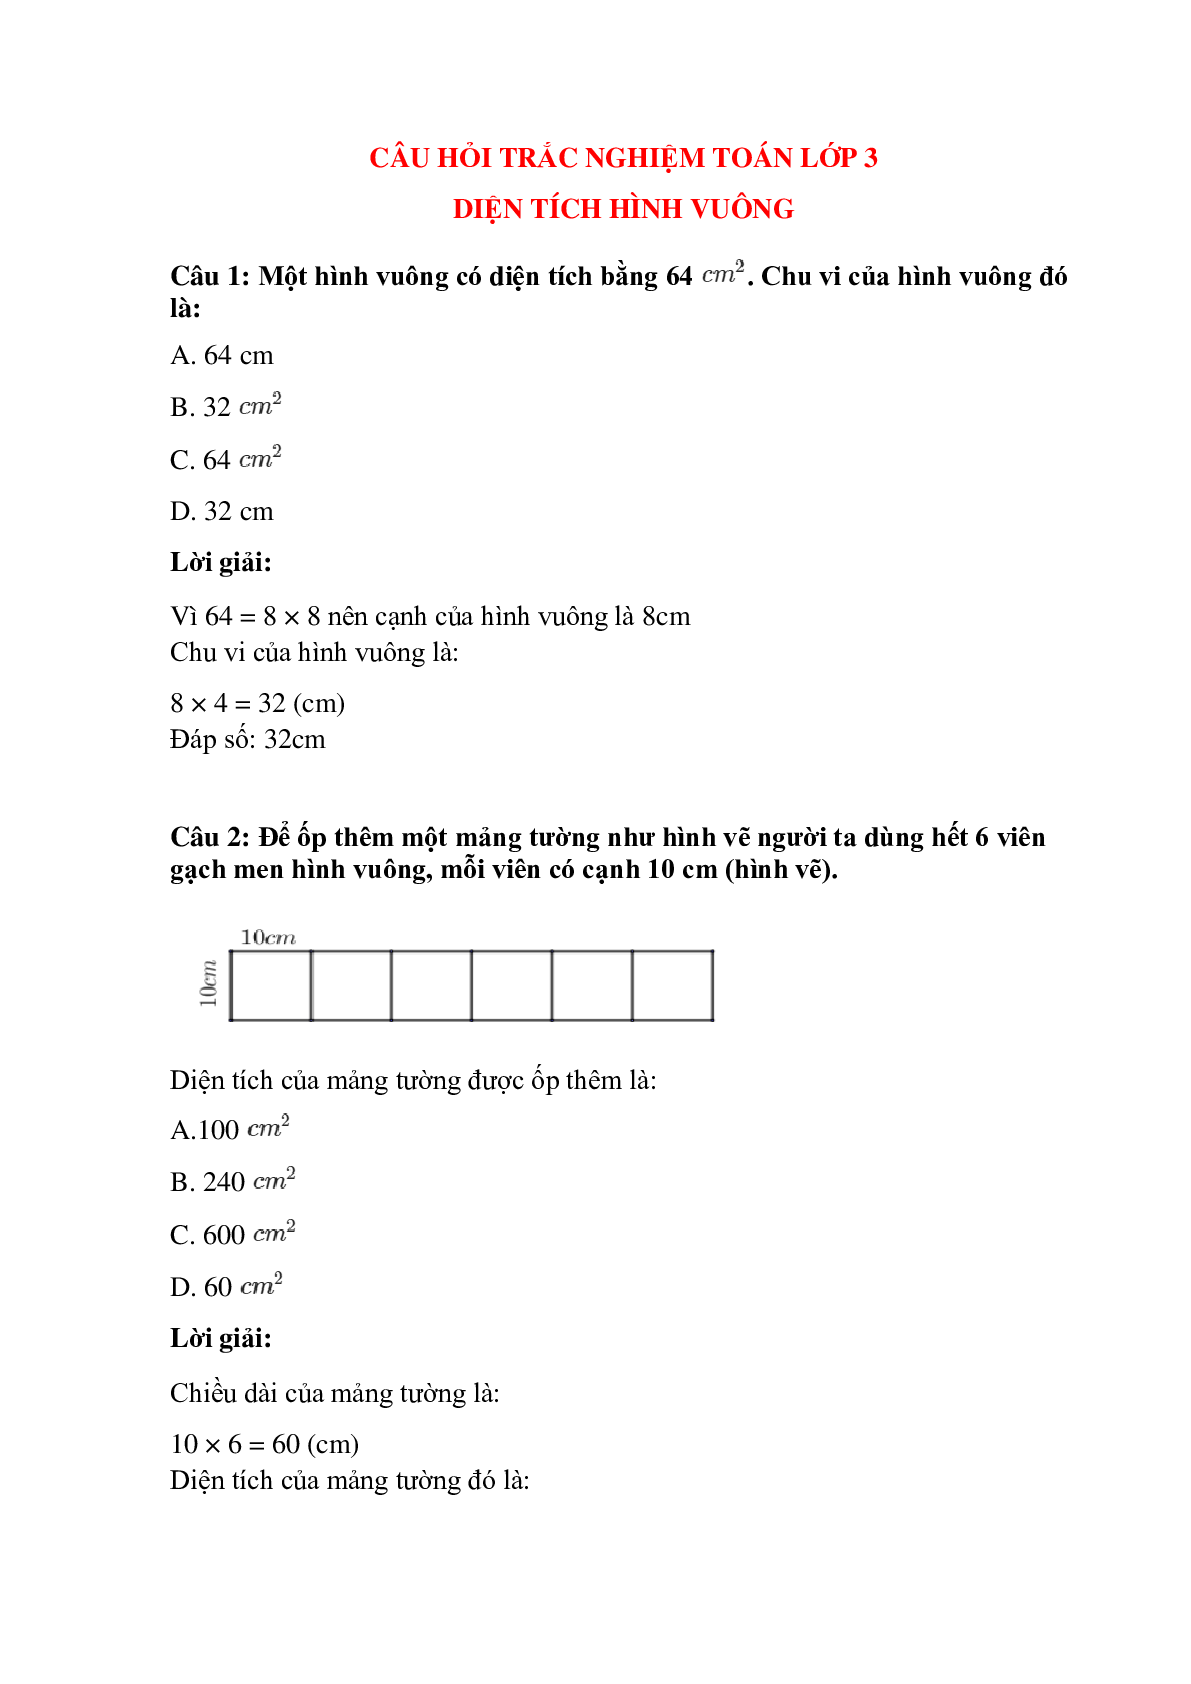 Trắc nghiệm Diện tích hình vuông có đáp án – Toán lớp 3 (trang 1)